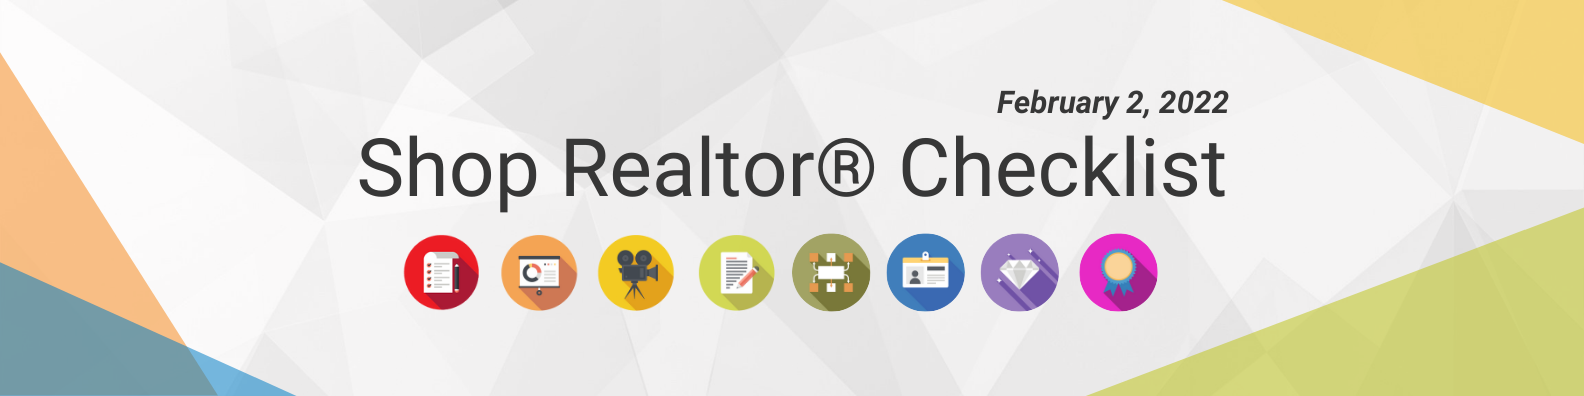 Shop Realtor® Checklist, Feb 2